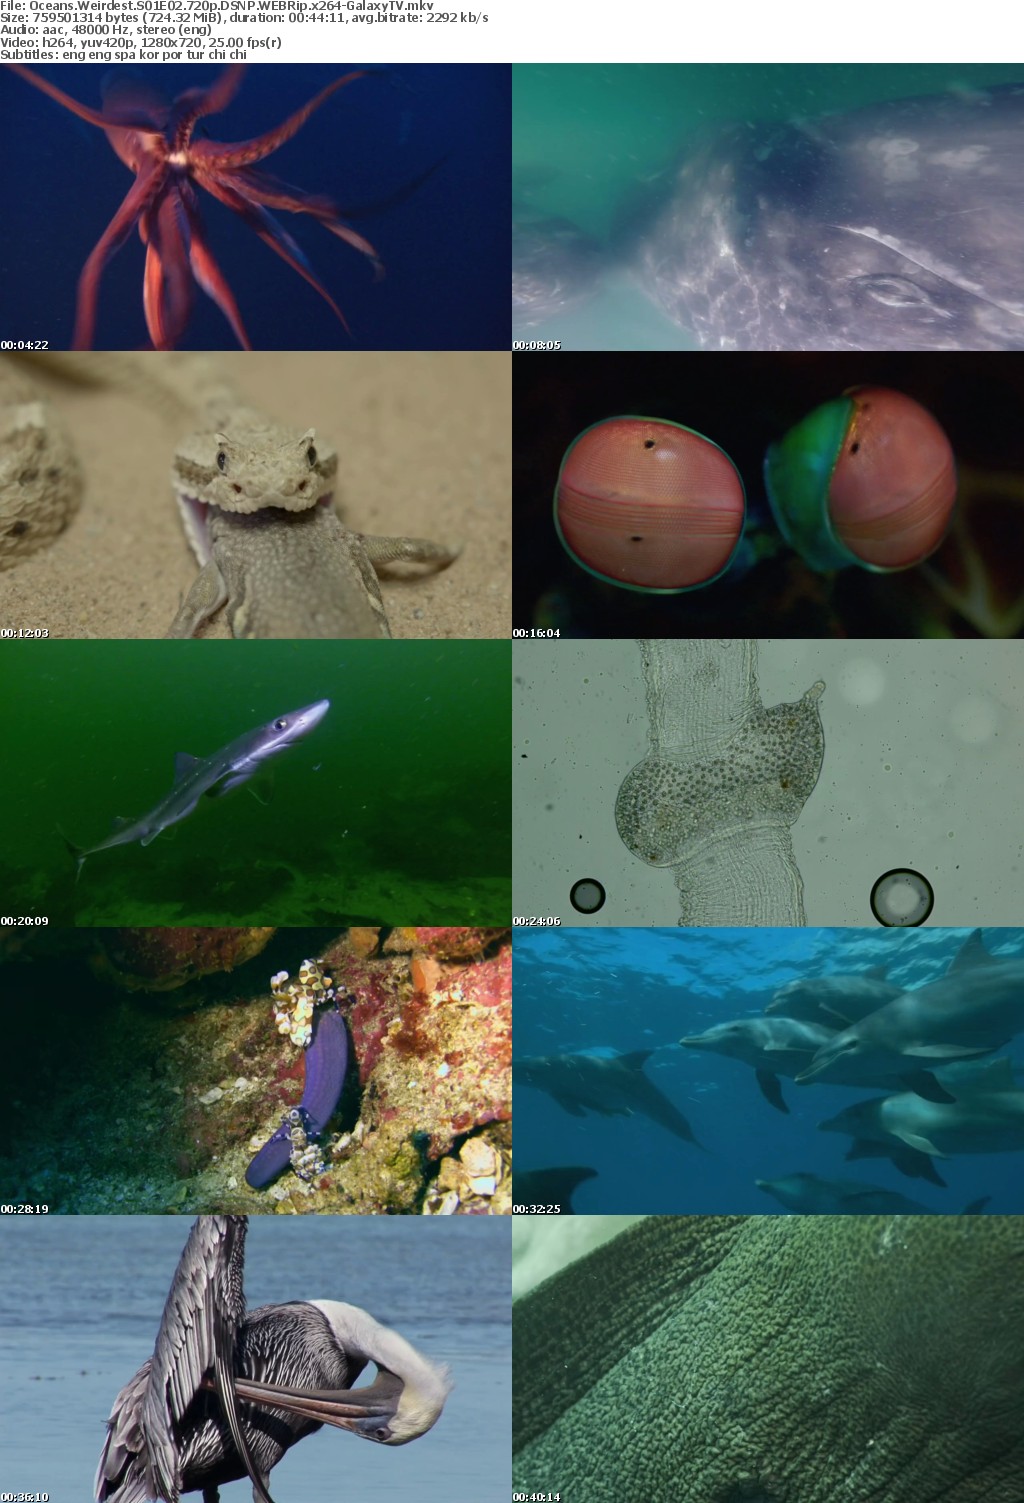 Oceans Weirdest S01 COMPLETE 720p DSNP WEBRip x264-GalaxyTV